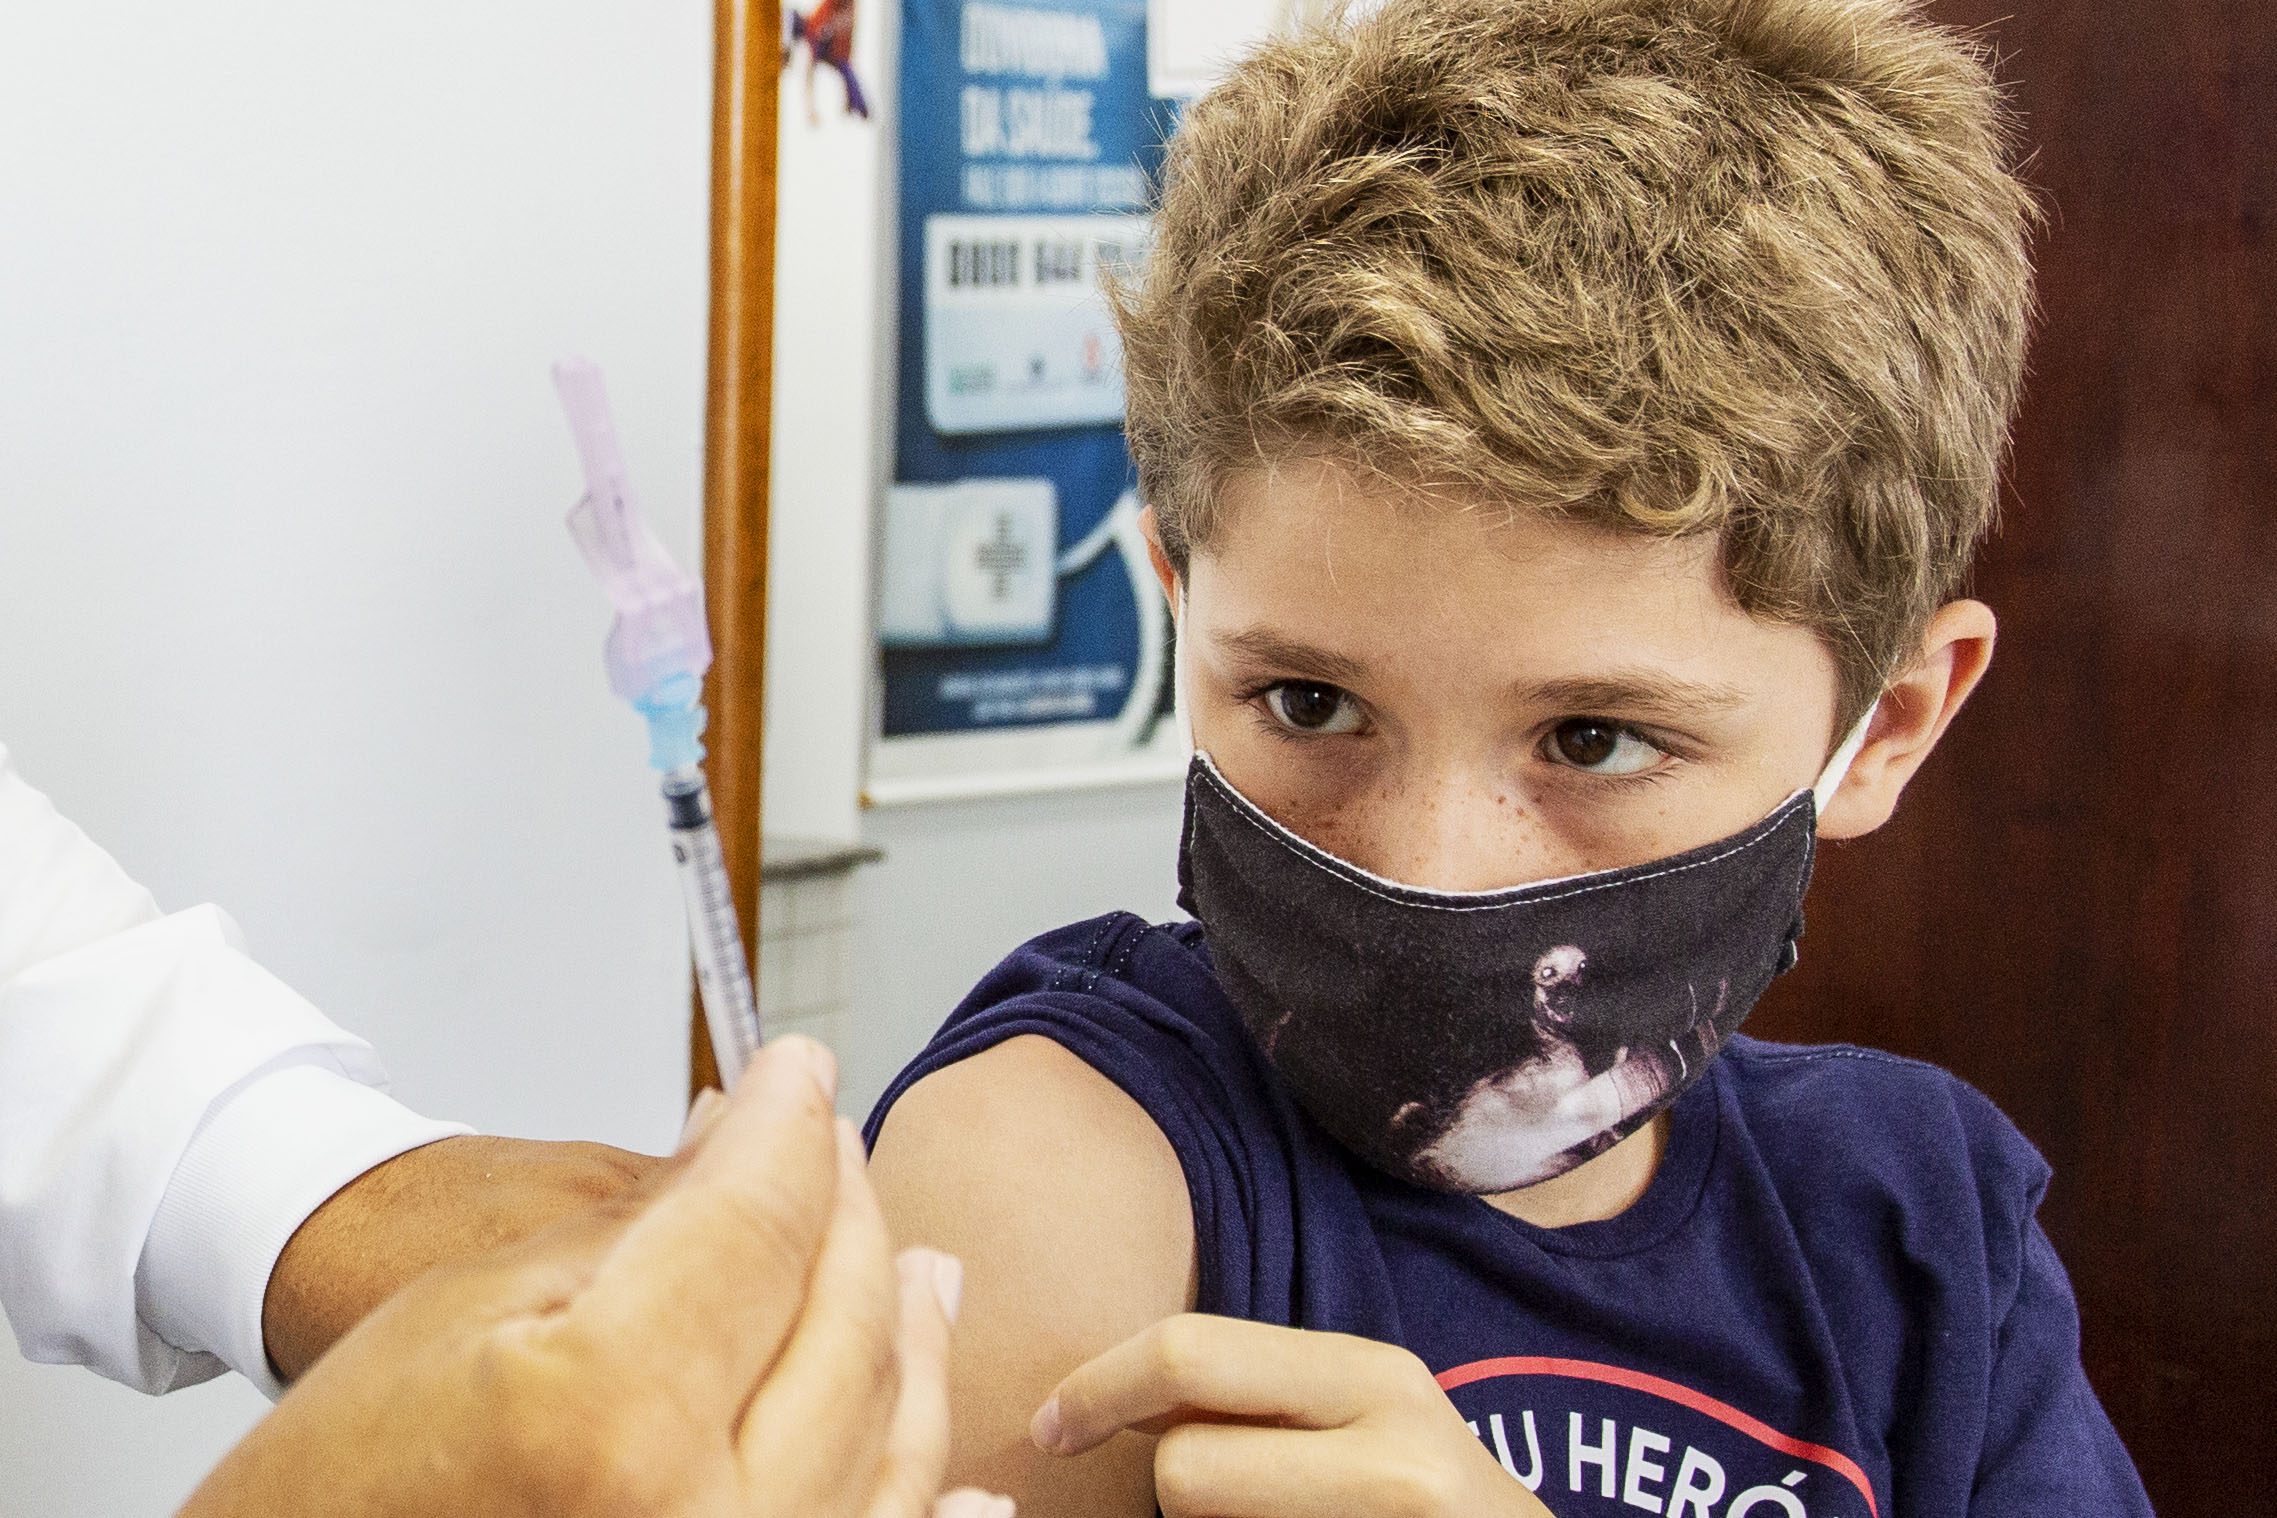 Anchieta: Dia de mobilização para vacinação de crianças contra Covid-19 nesta sexta (11)